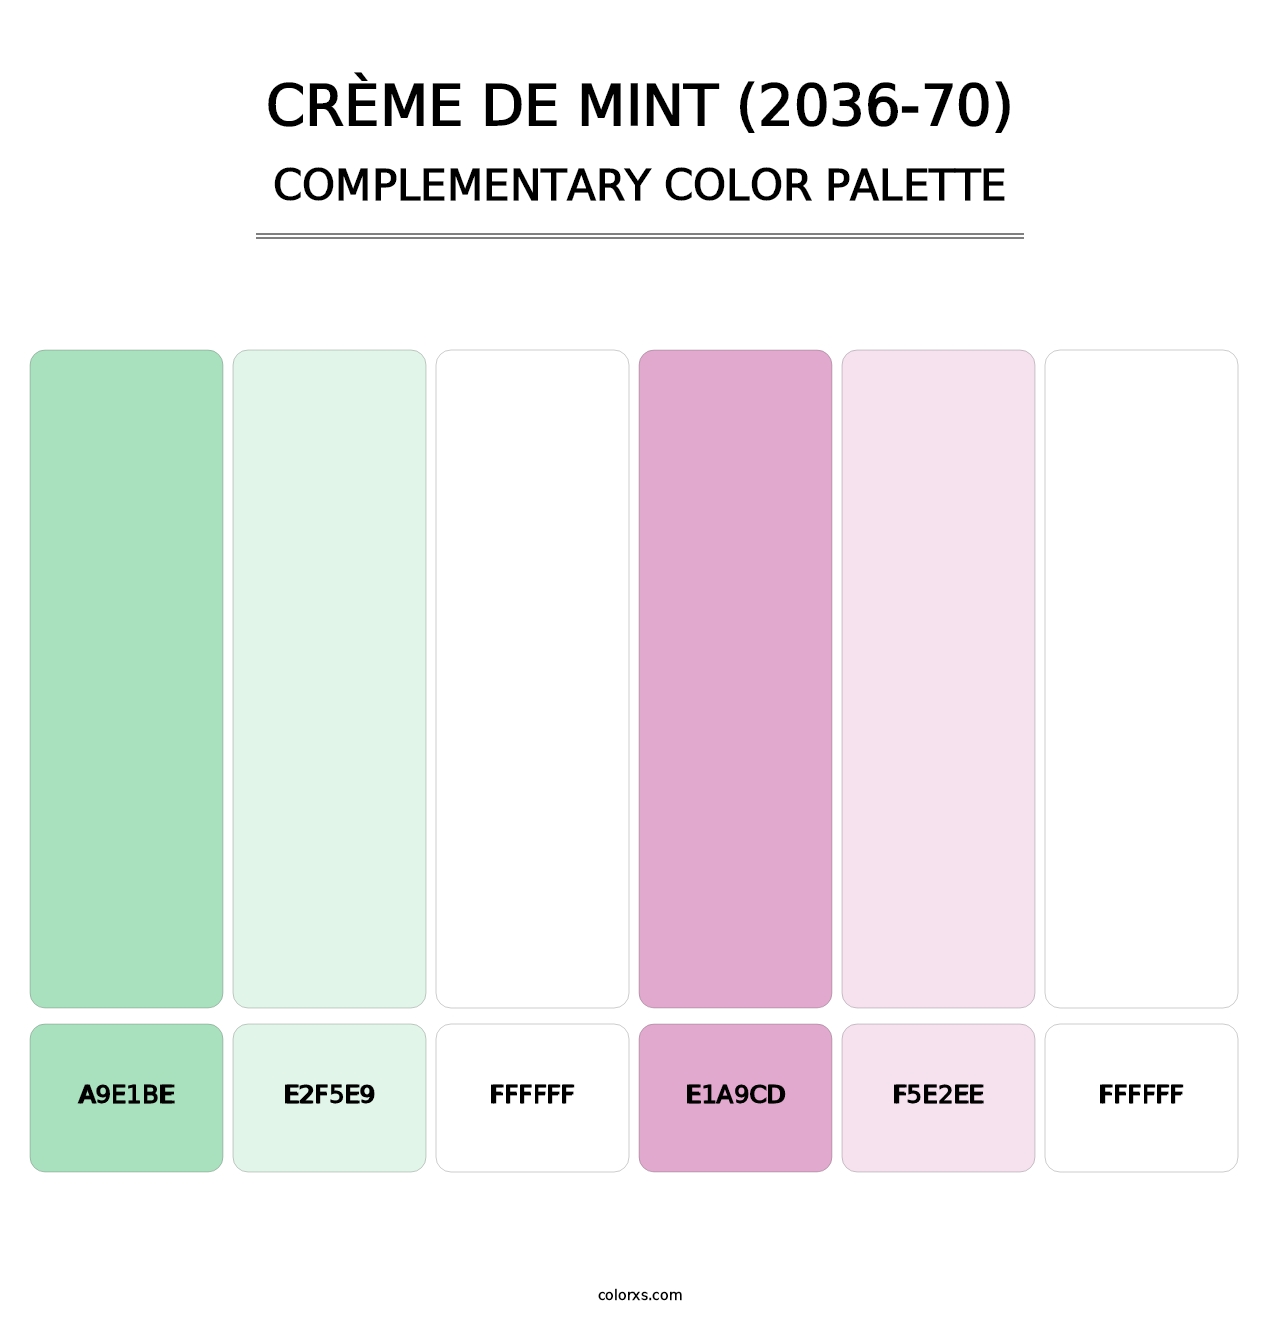 Crème de Mint (2036-70) - Complementary Color Palette